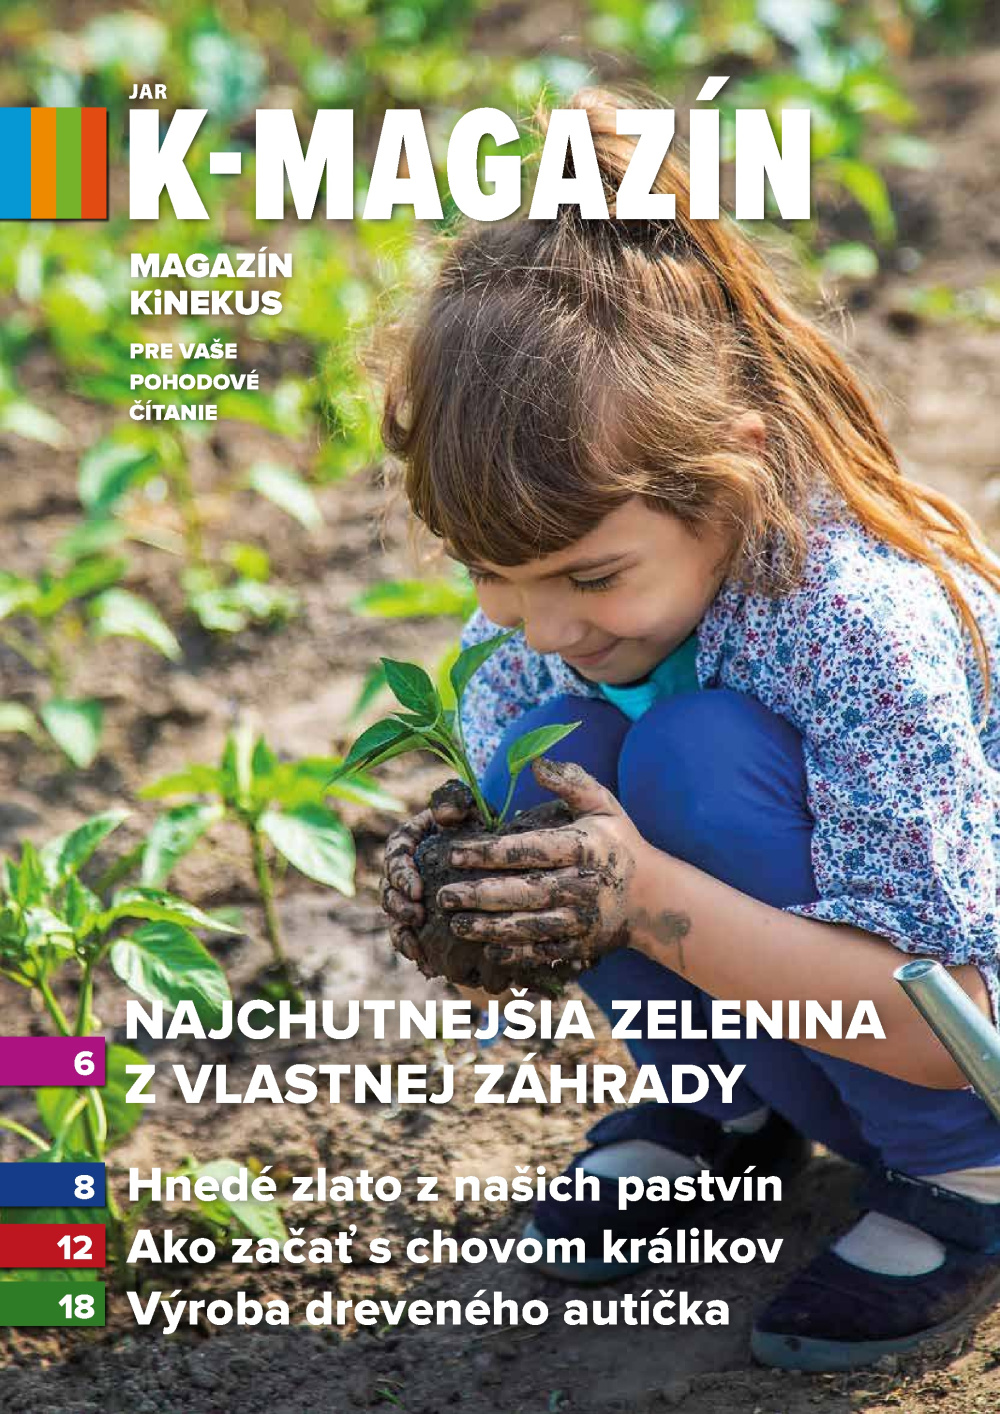 Leták Kinekus magazín - Jar, Slovensko - strana 1